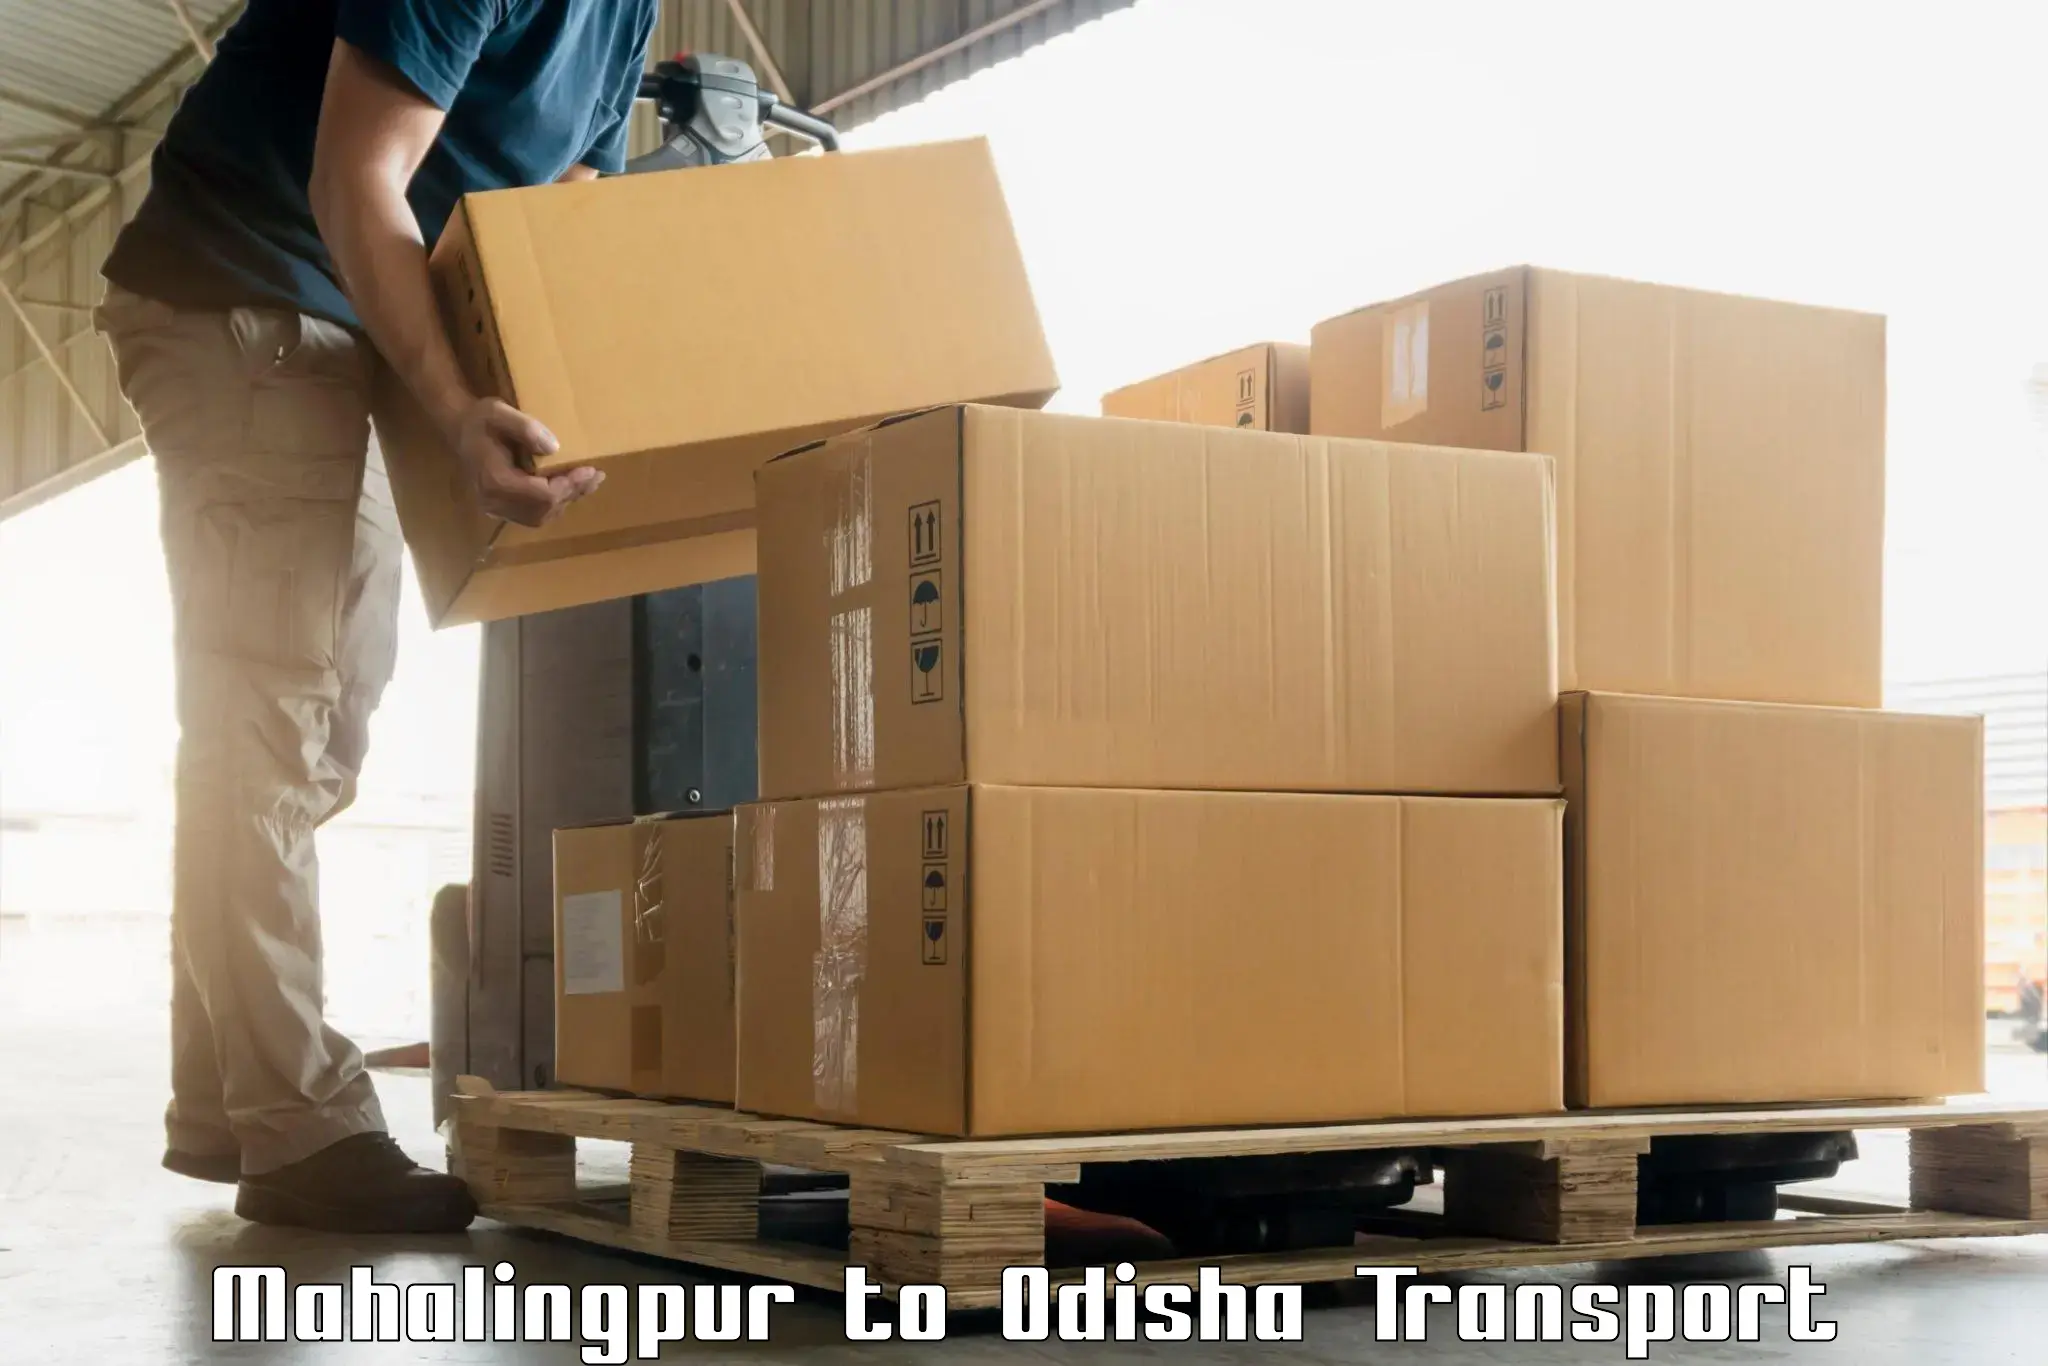 Container transport service Mahalingpur to Junagarh Kalahandi